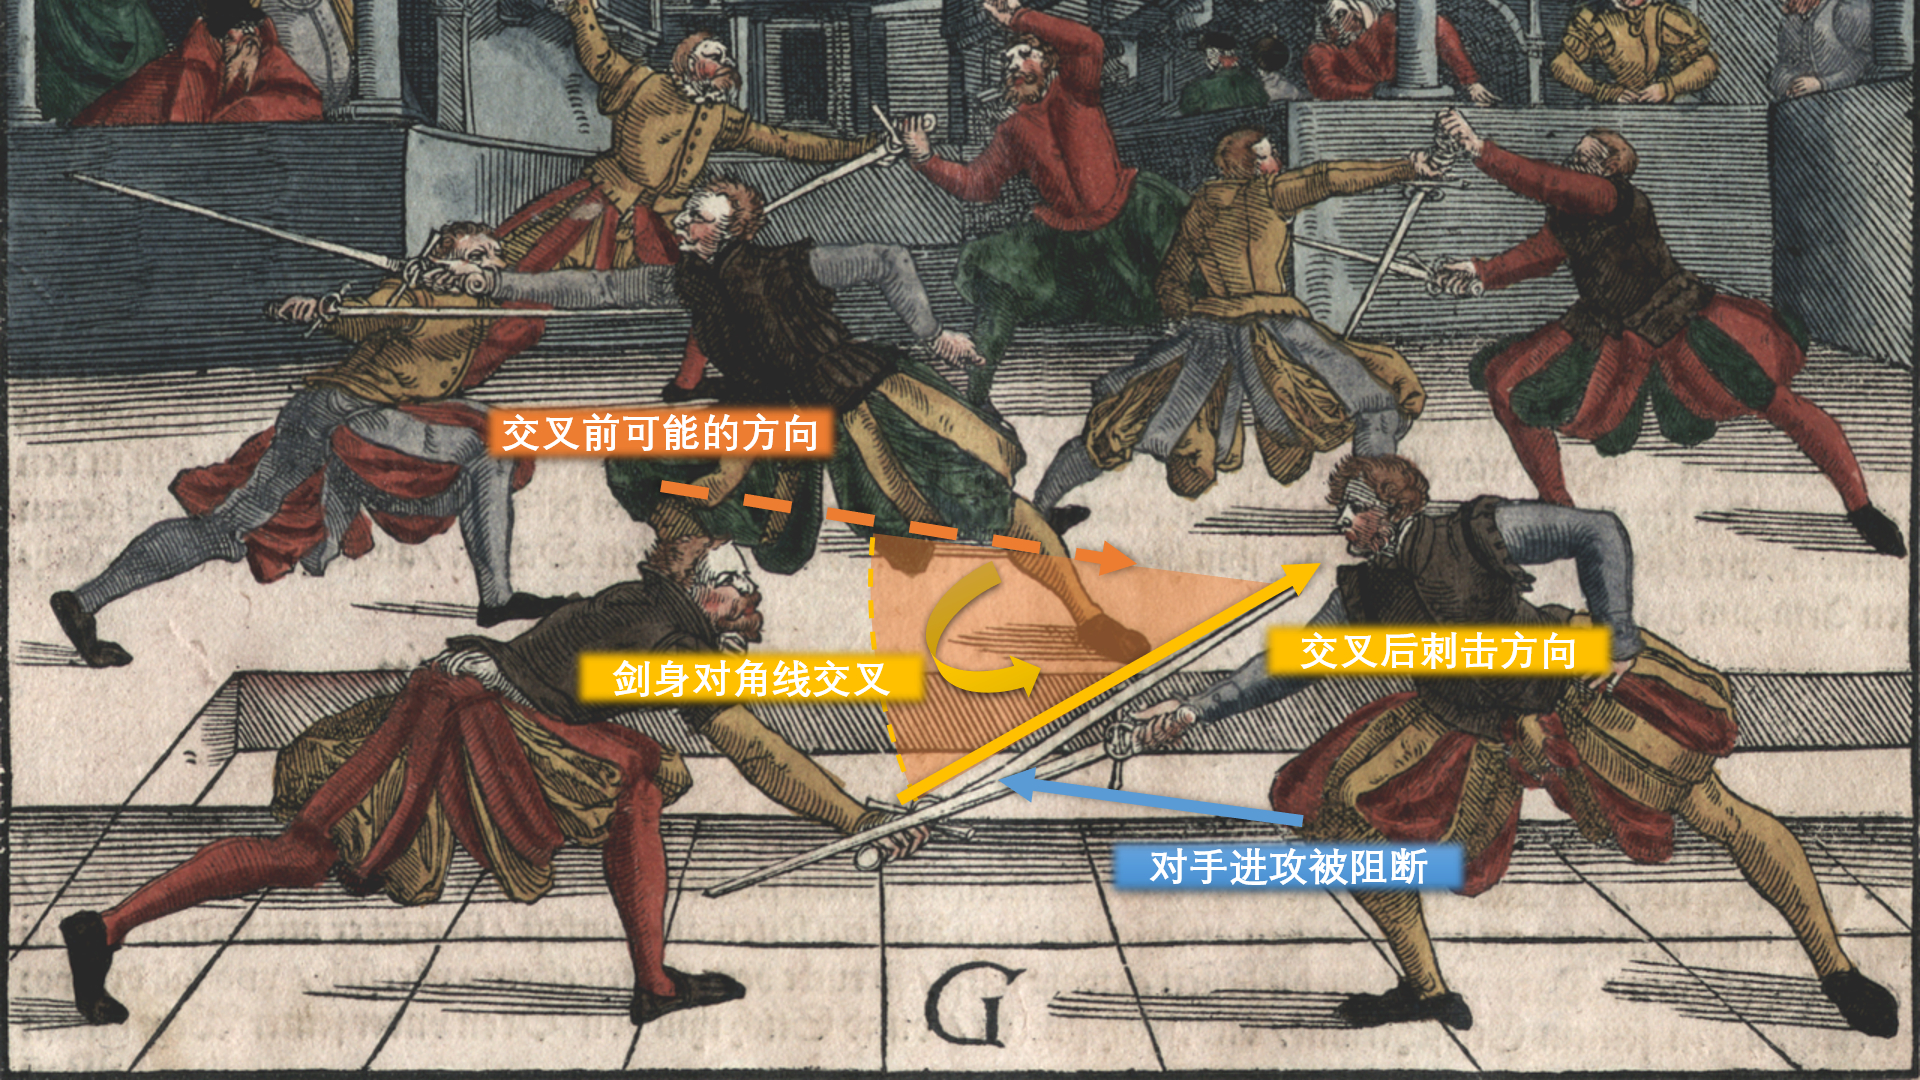 图中左侧的剑士很可能在发动刺击后将剑身交叉到下方，在阻断对手武器的同时实现了成功刺击